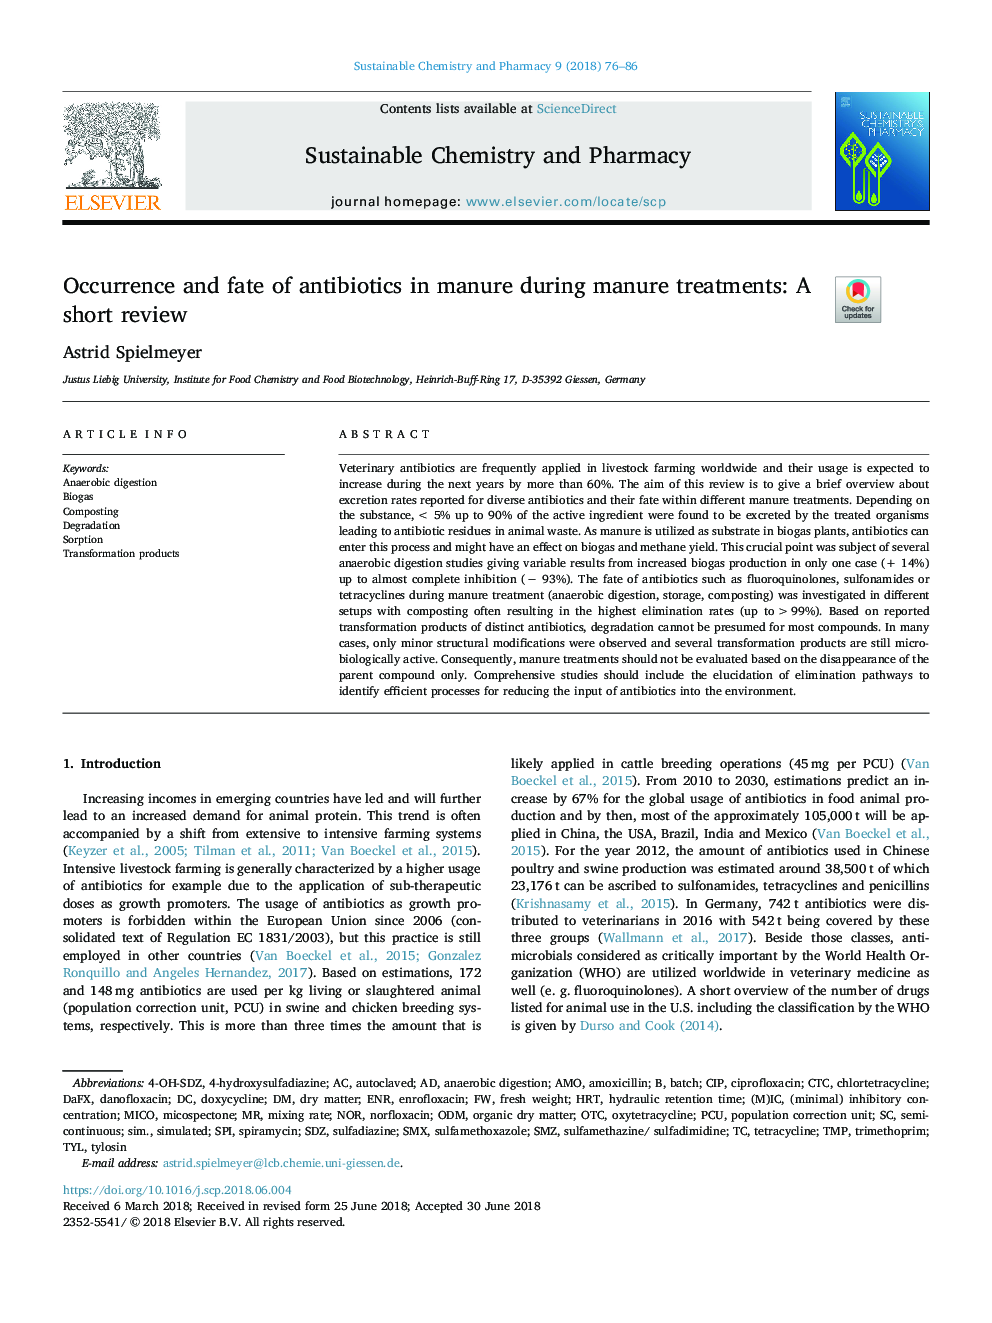 وقوع و سرنوشت آنتی بیوتیک ها در کود نیترات در طی کودی: بررسی کوتاه مدت 